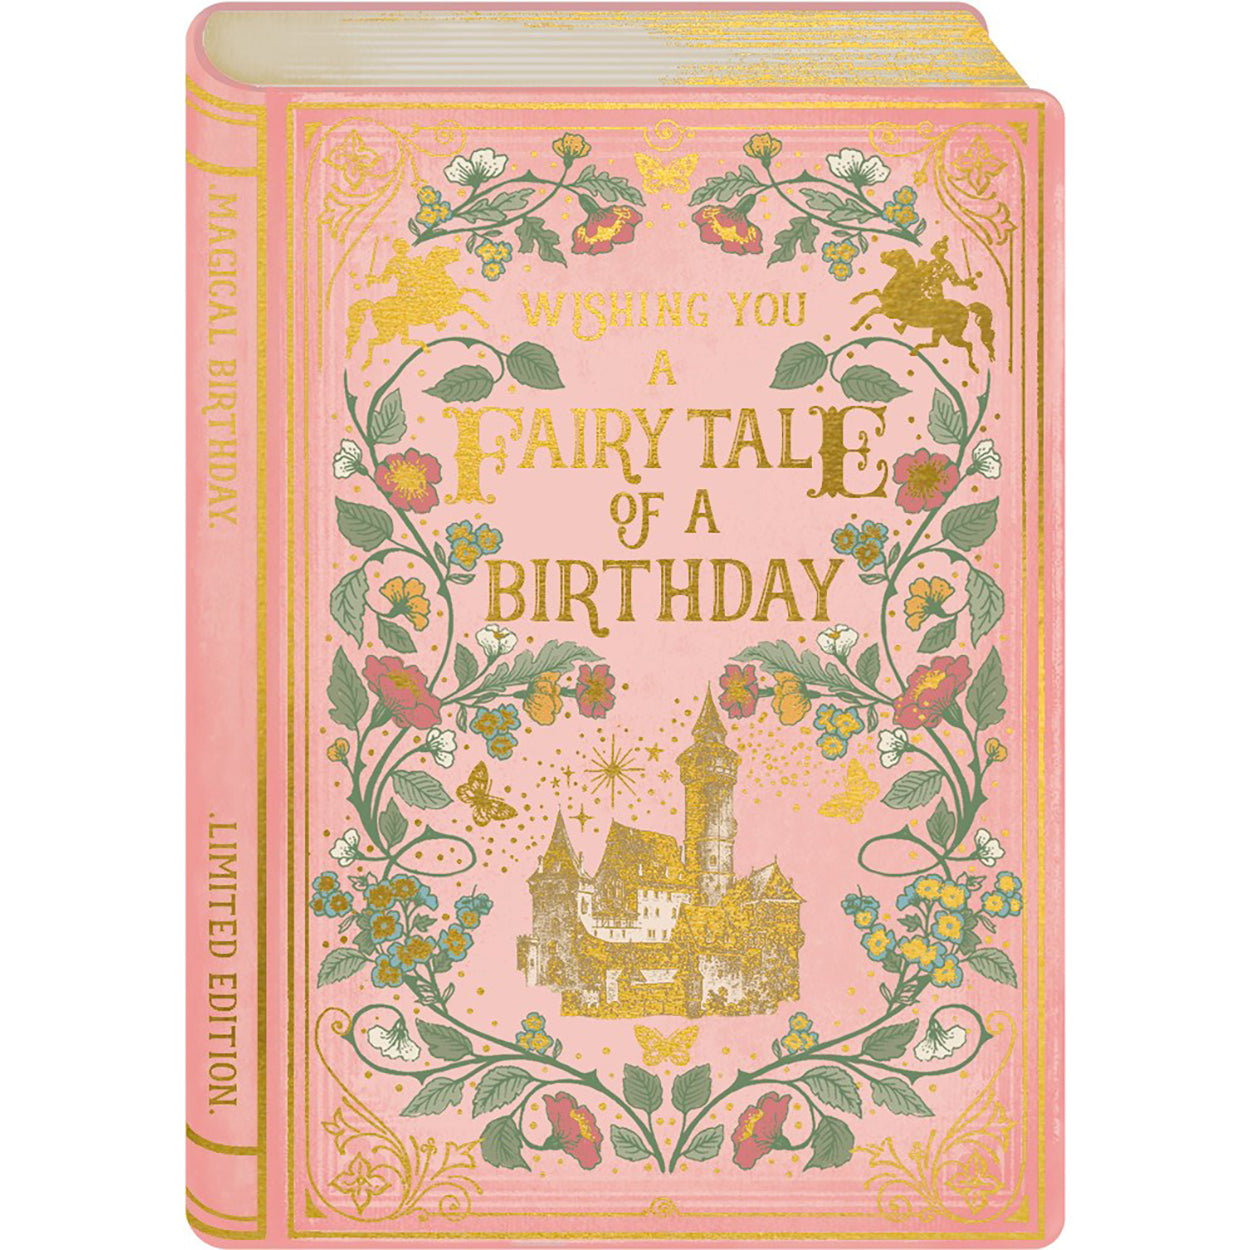 Fairytale of A Birthday Card